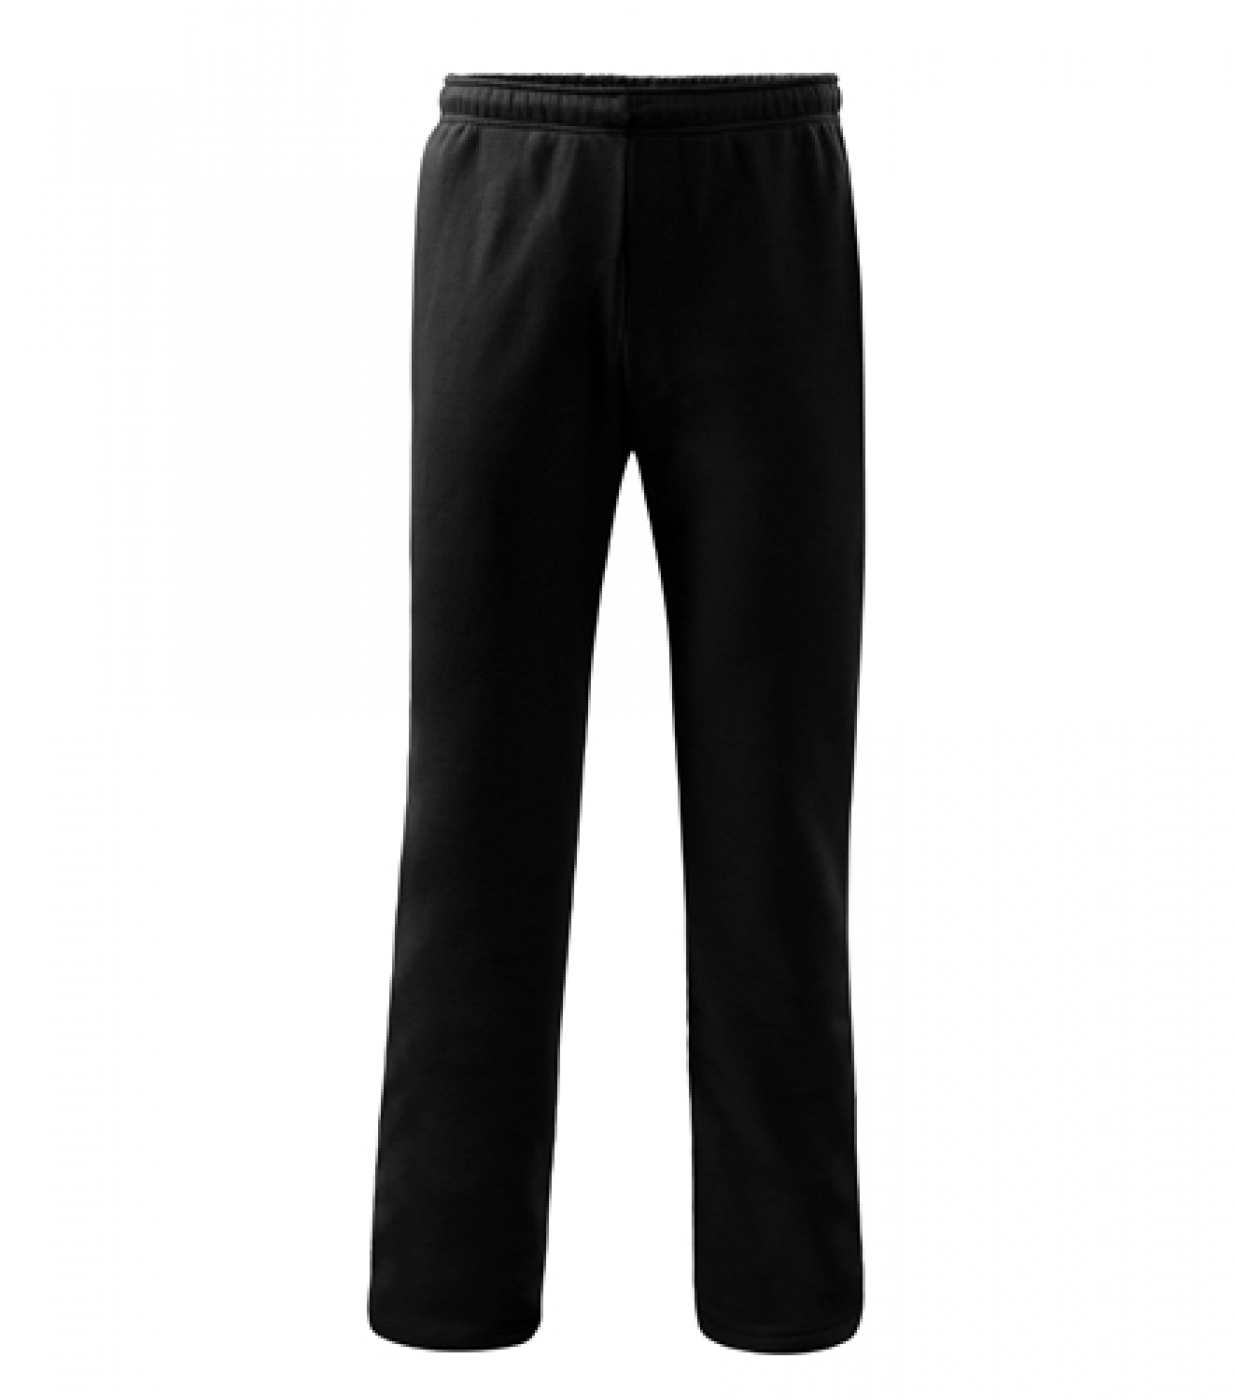 Pantalon de lucru pentru barbati, din bumbac, model confort, cu elastic, snur si buzunare